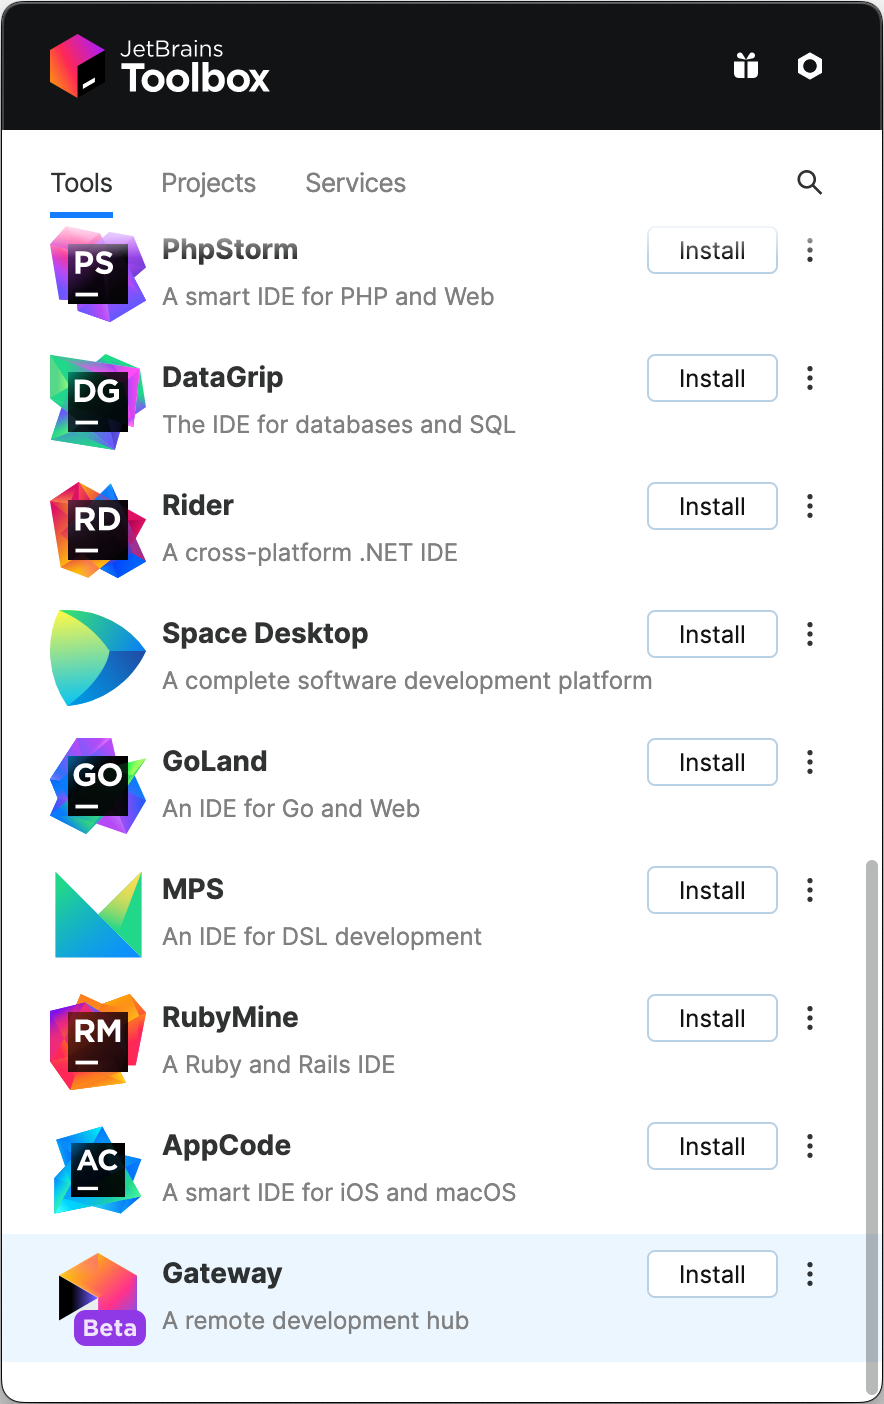 Captura de pantalla del cuadro de herramientas de JetBrains con "Gateway" en la parte inferior de la lista de aplicaciones. Cada aplicación tiene un botón "Instalar" junto a ella.